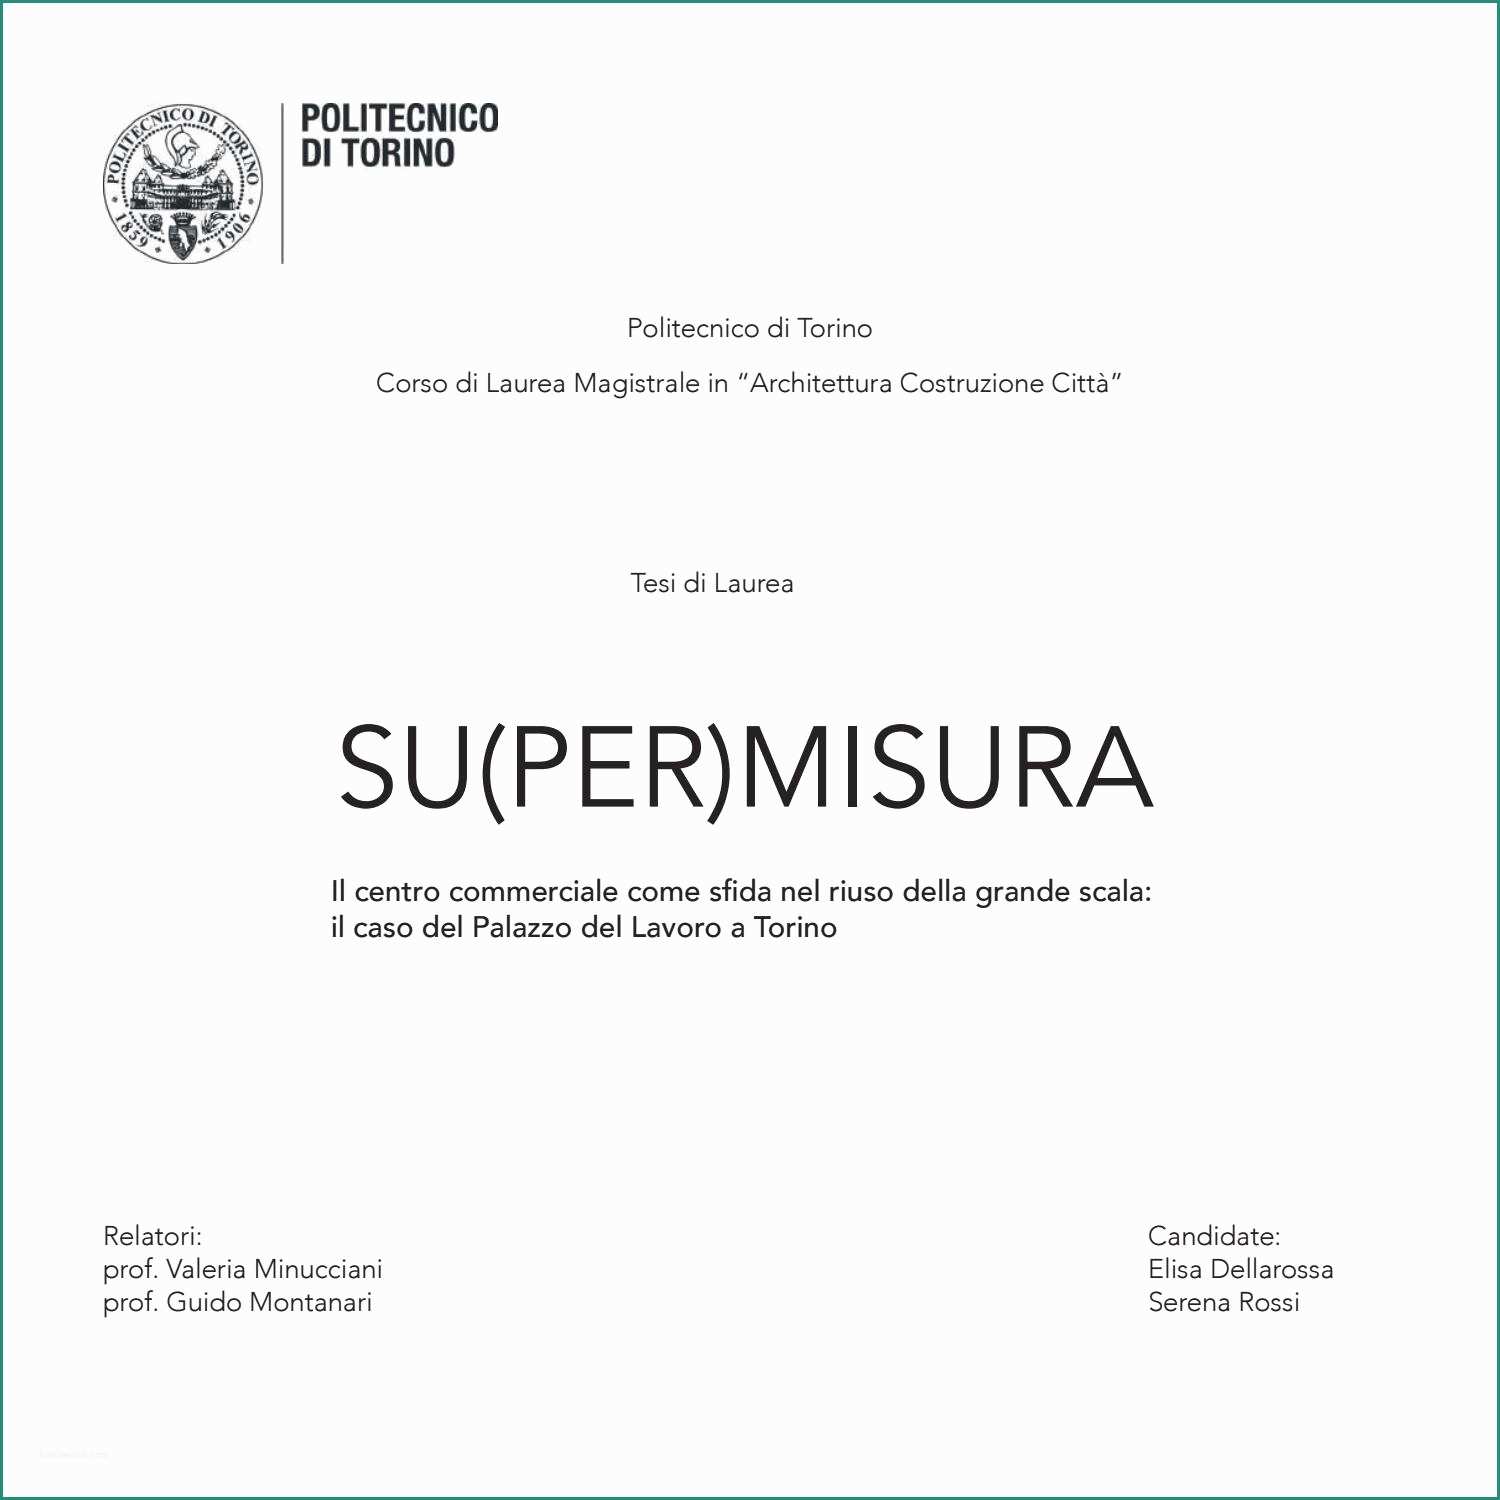 Catalogo Premi Esselunga E Su Per Misura by Elisa Dellarossa issuu